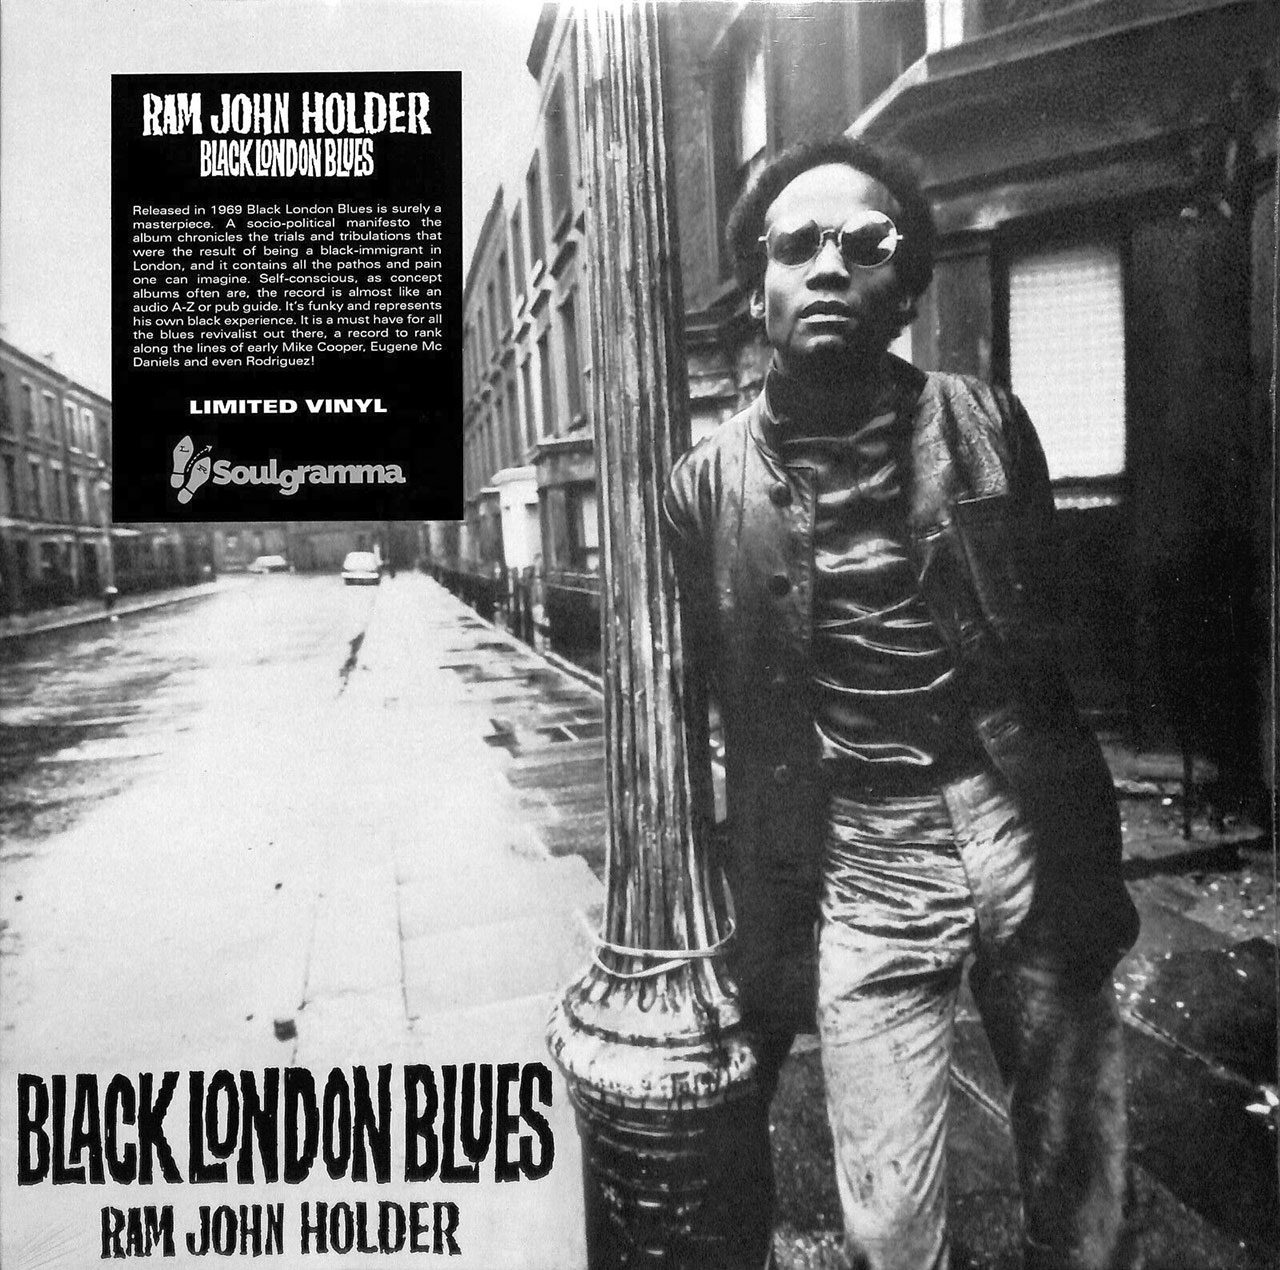 RAM JOHN HOLDER: "Black London Blues" cover album